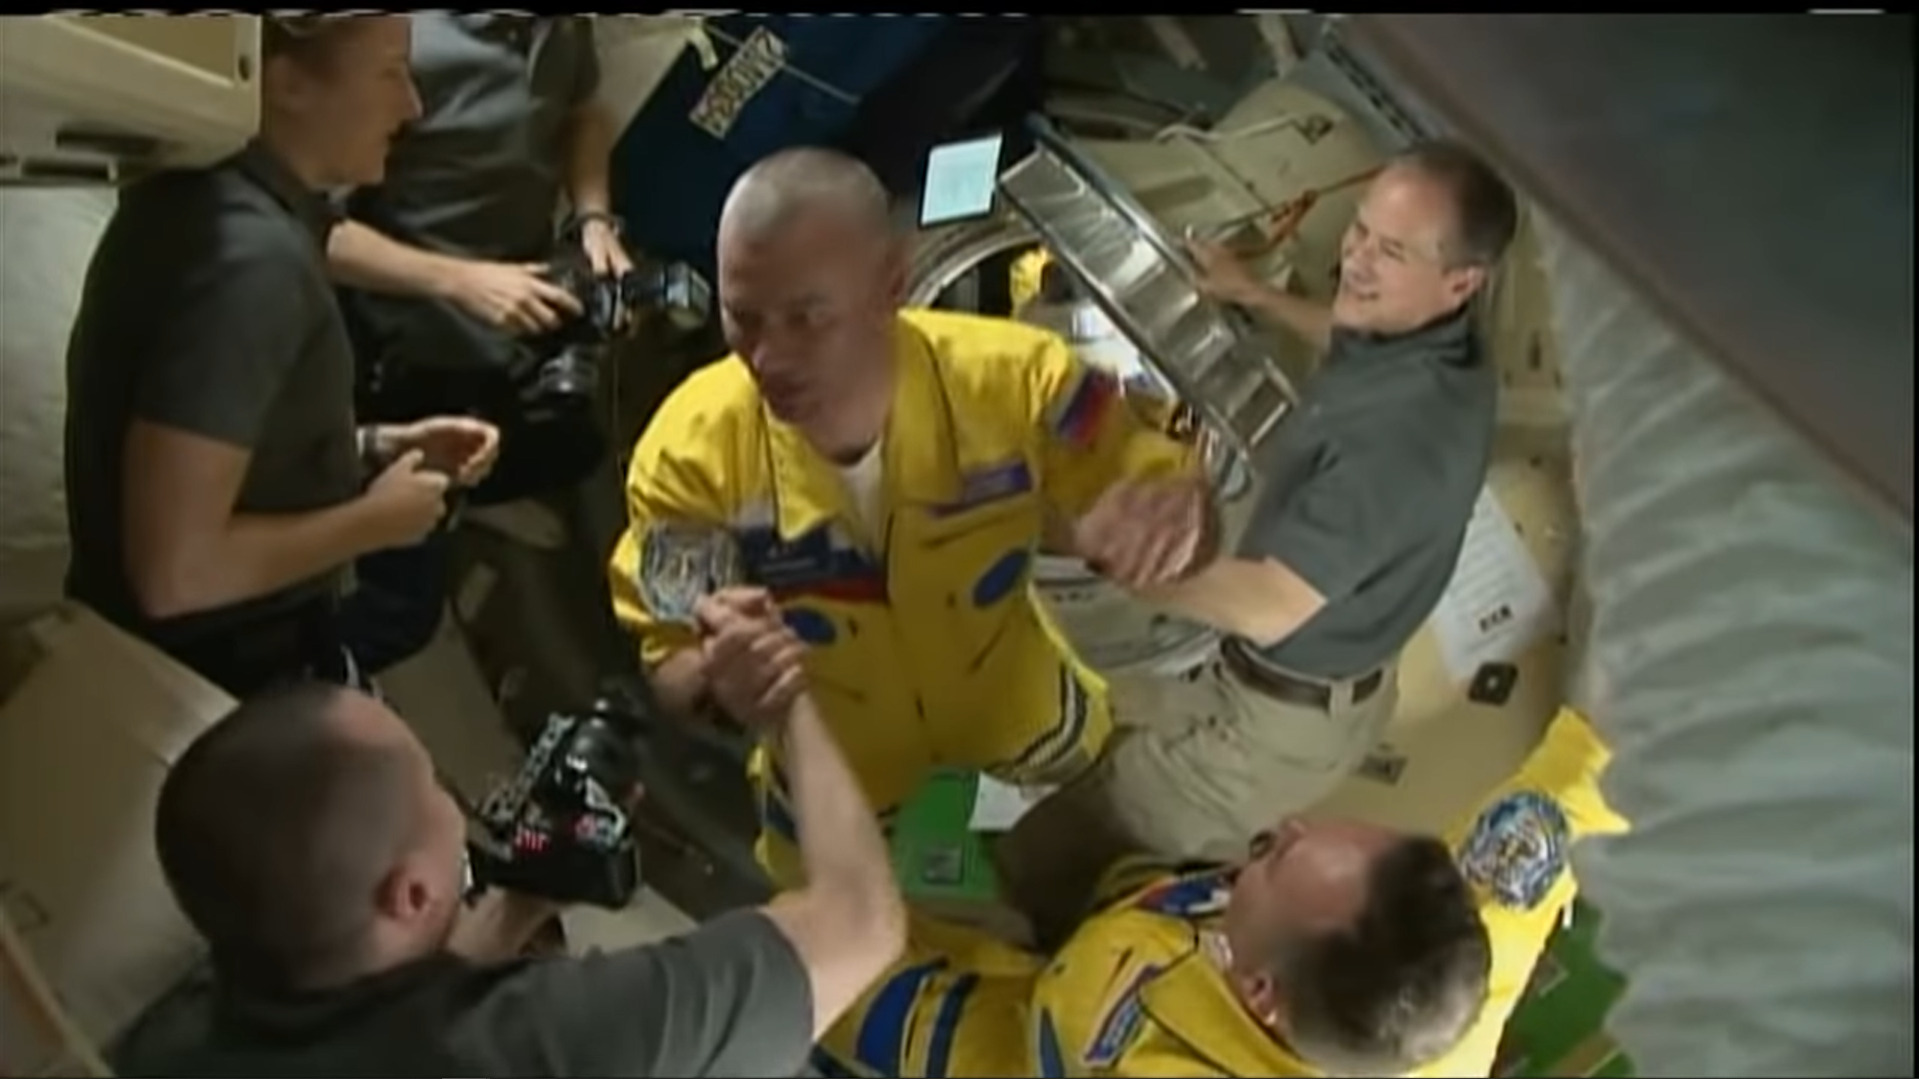 รัสเซียแจงนักบินอวกาศสวมชุดสีเหลืองไม่ได้ต่อต้านสงครามยูเครน